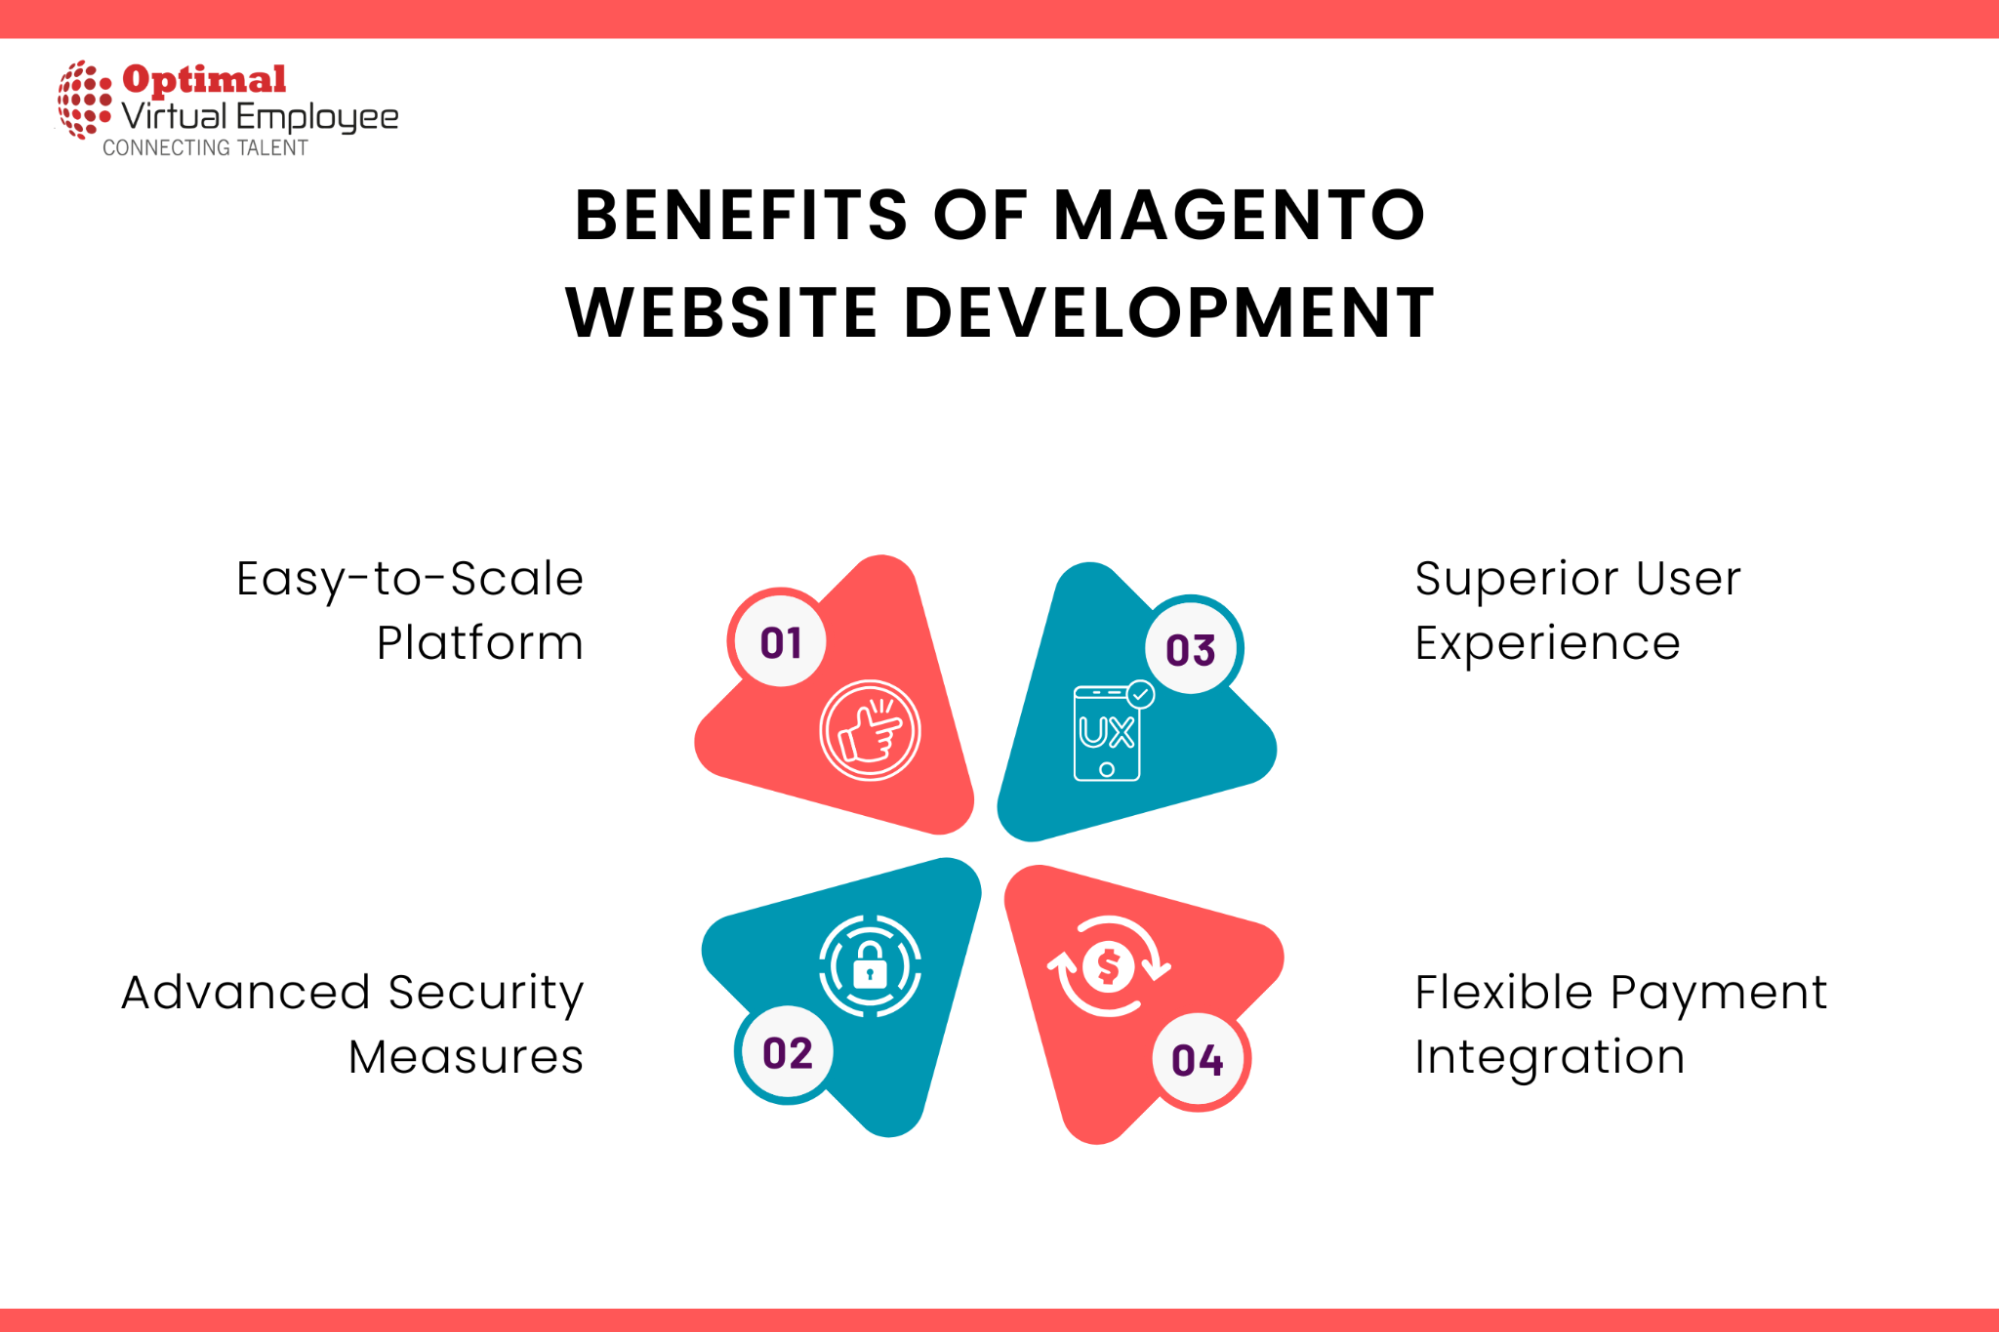 Benefits of Magento Website Development